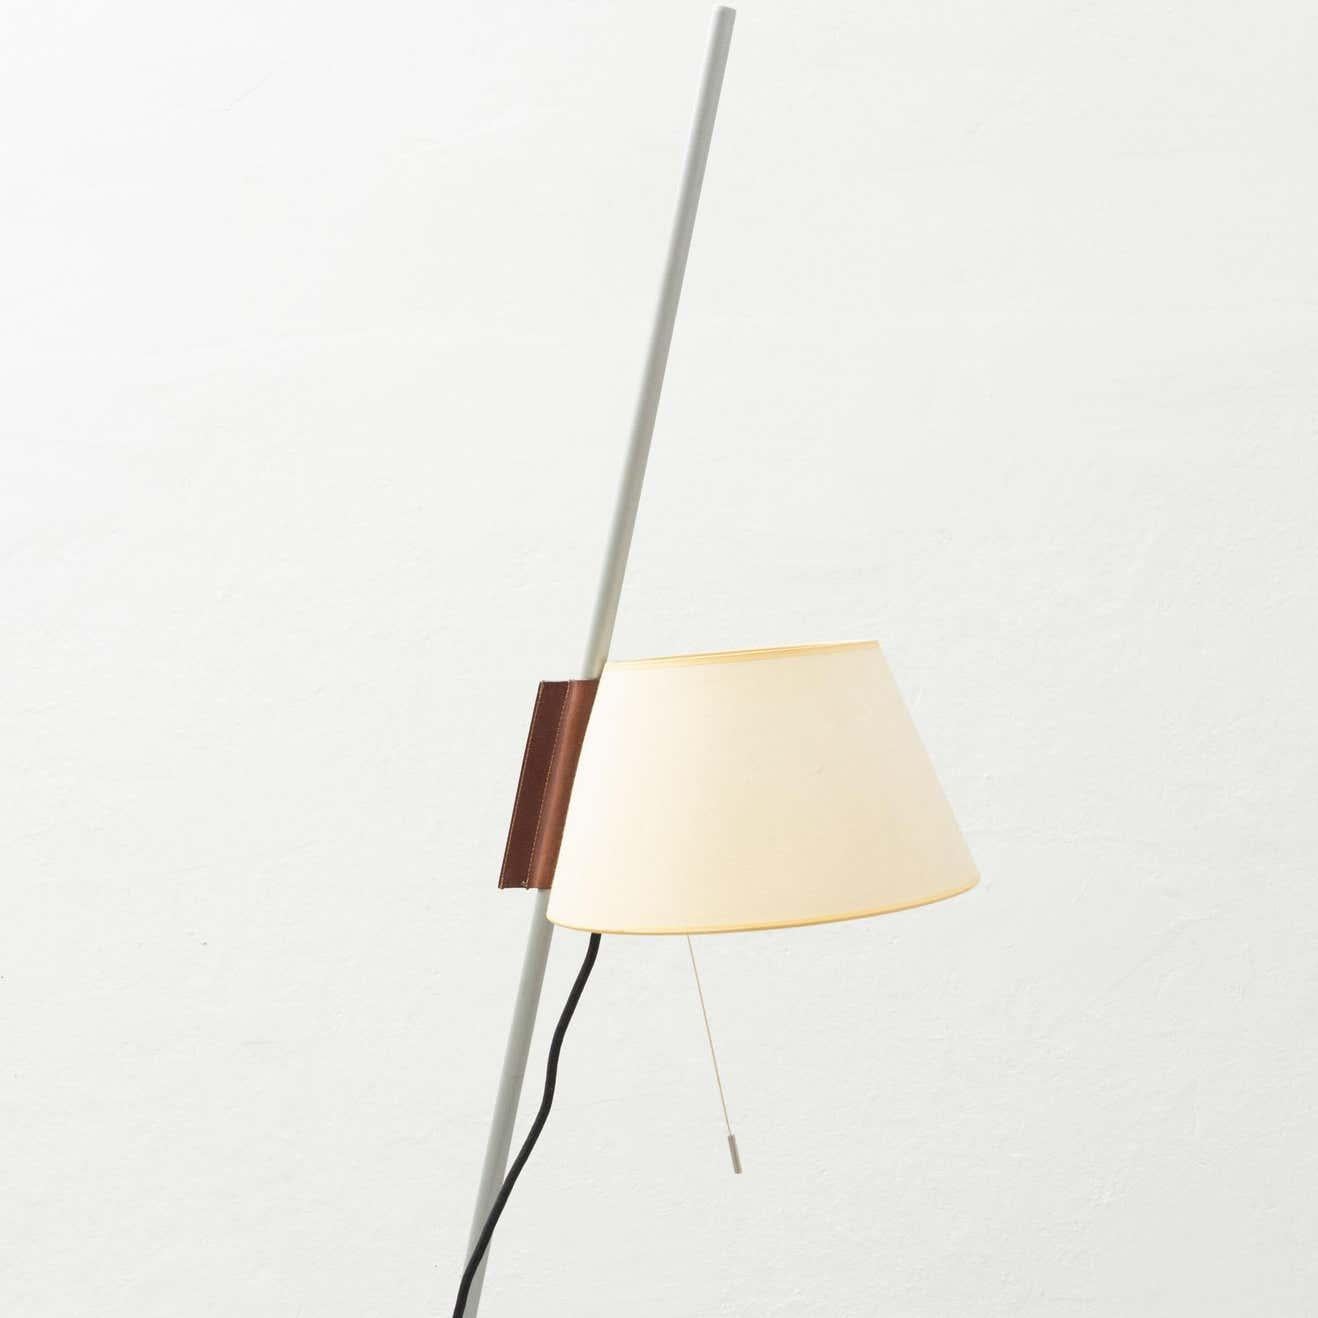 Estudio Blanch Simplisima Floor Lamp by Metalarte, circa 1970 For Sale 3